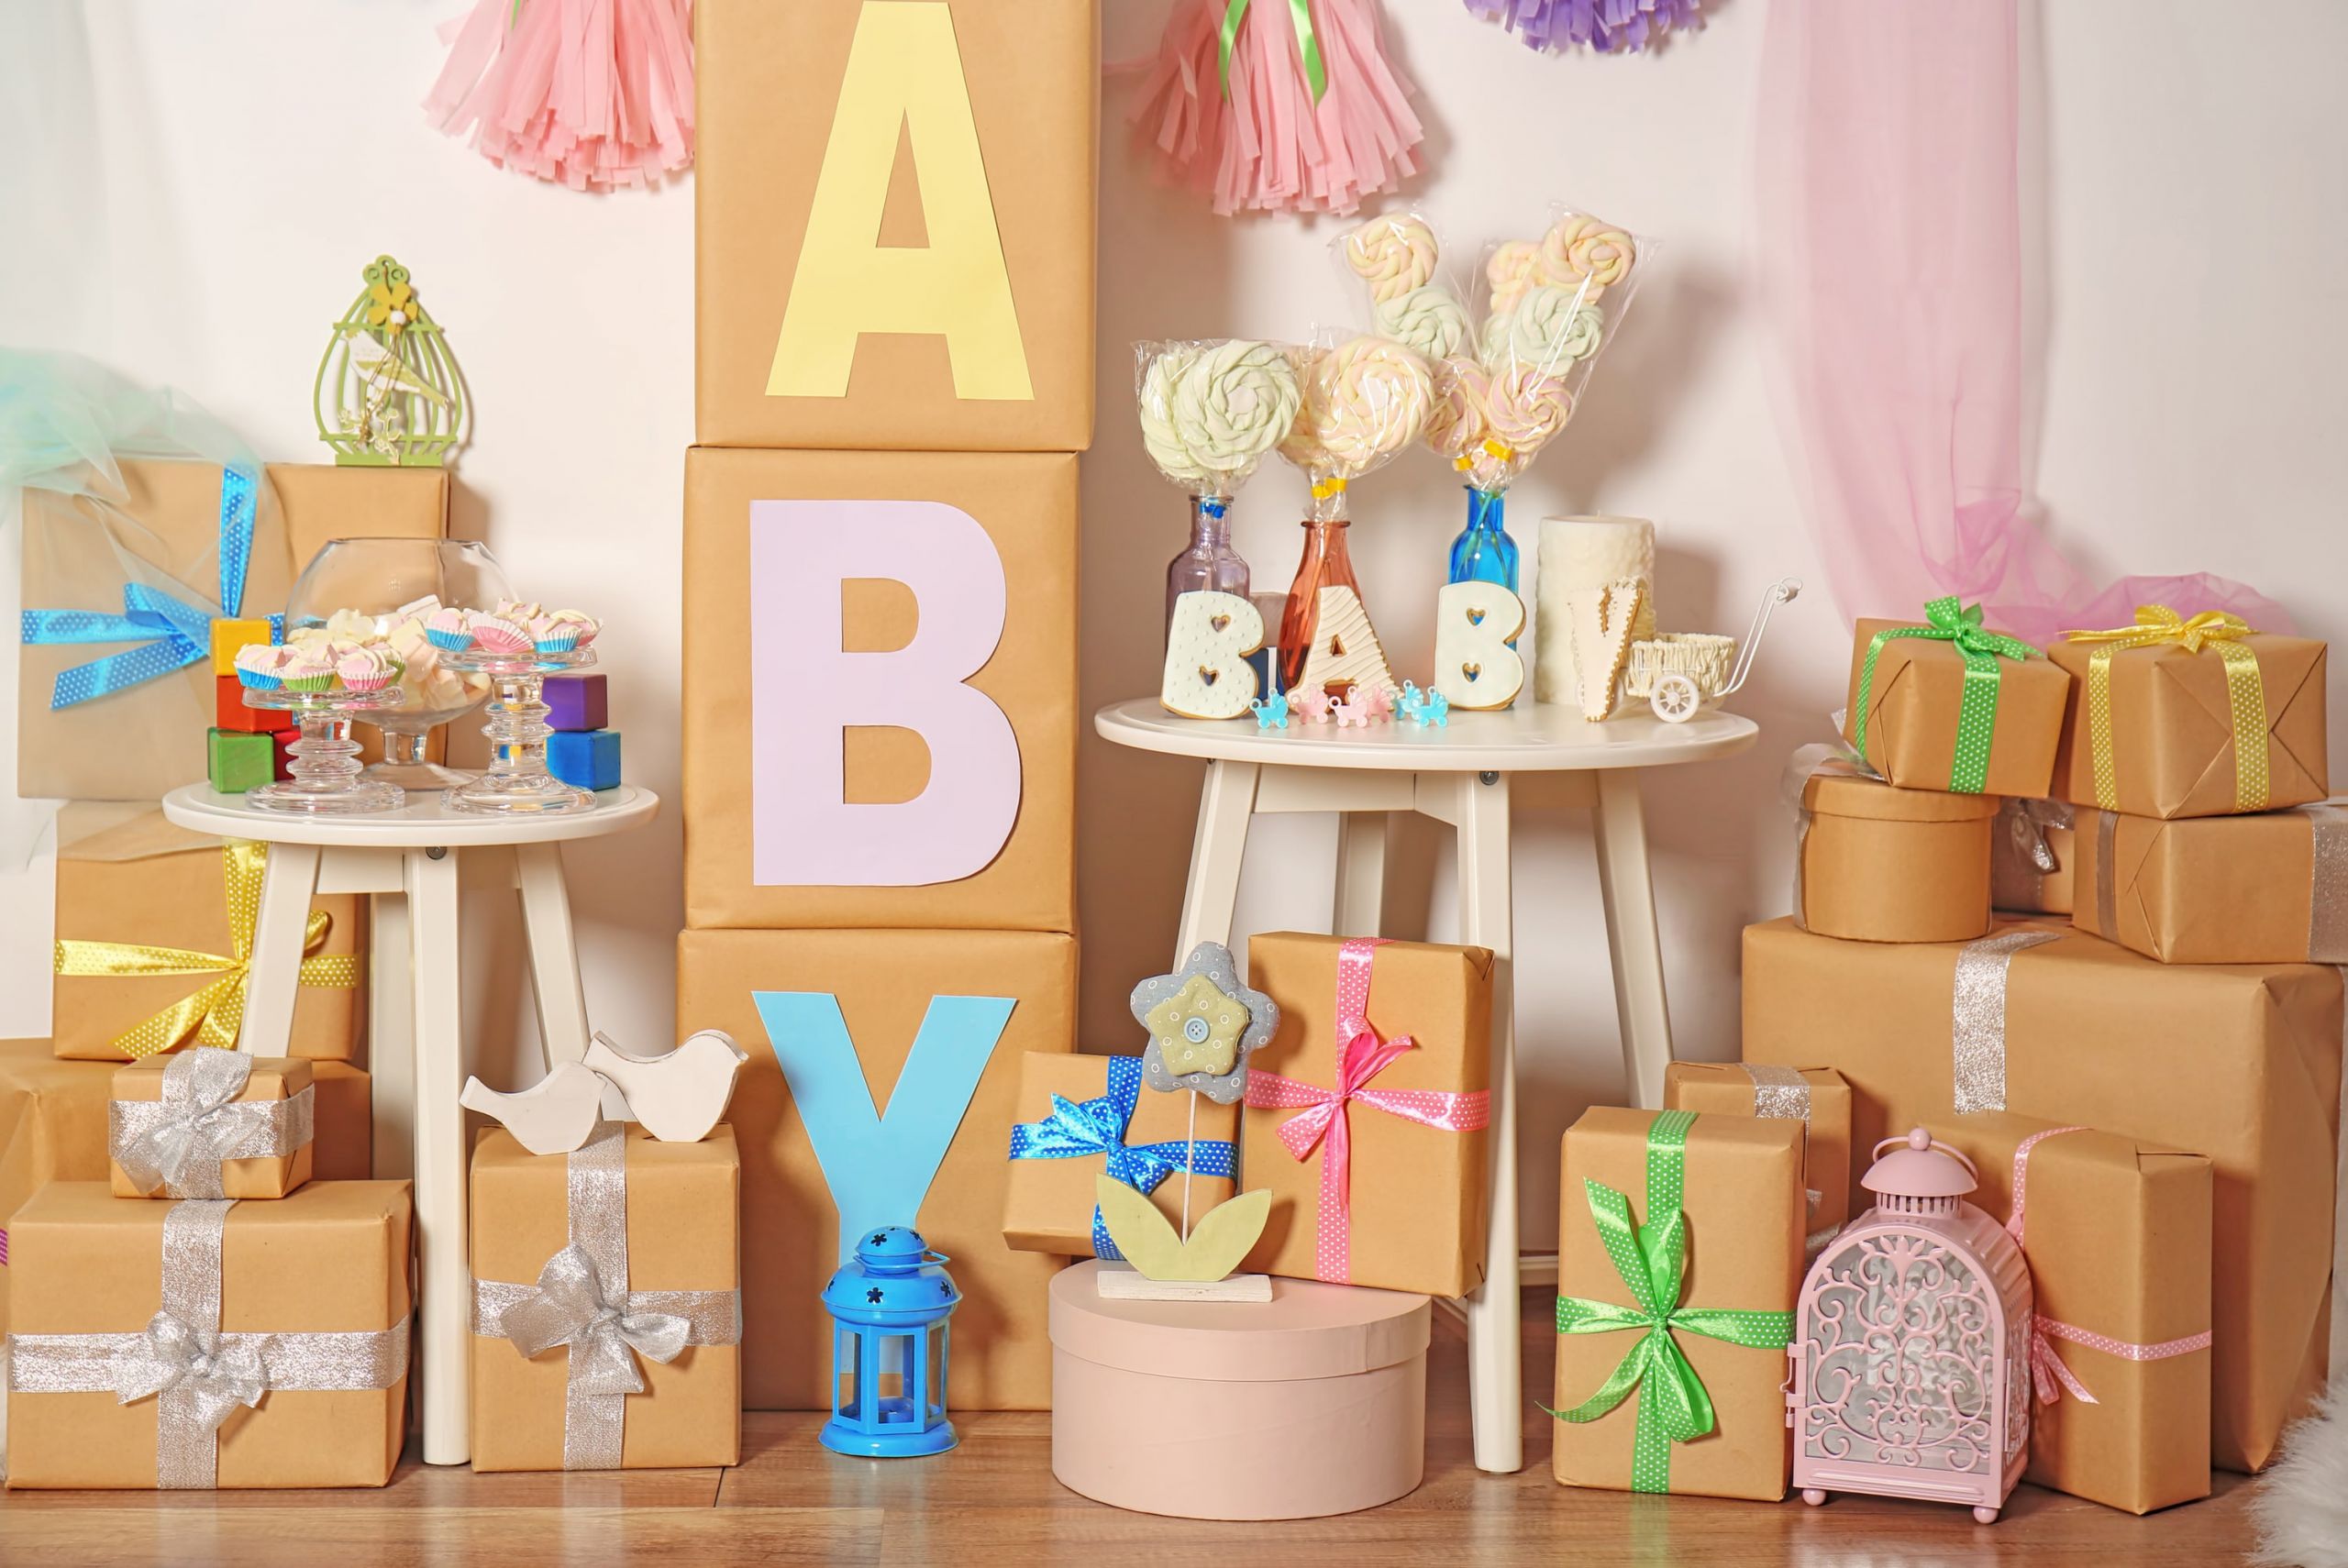 Decoration Ideas For Baby Shower
 5 Cheap & Unique Baby Shower Decoration Ideas